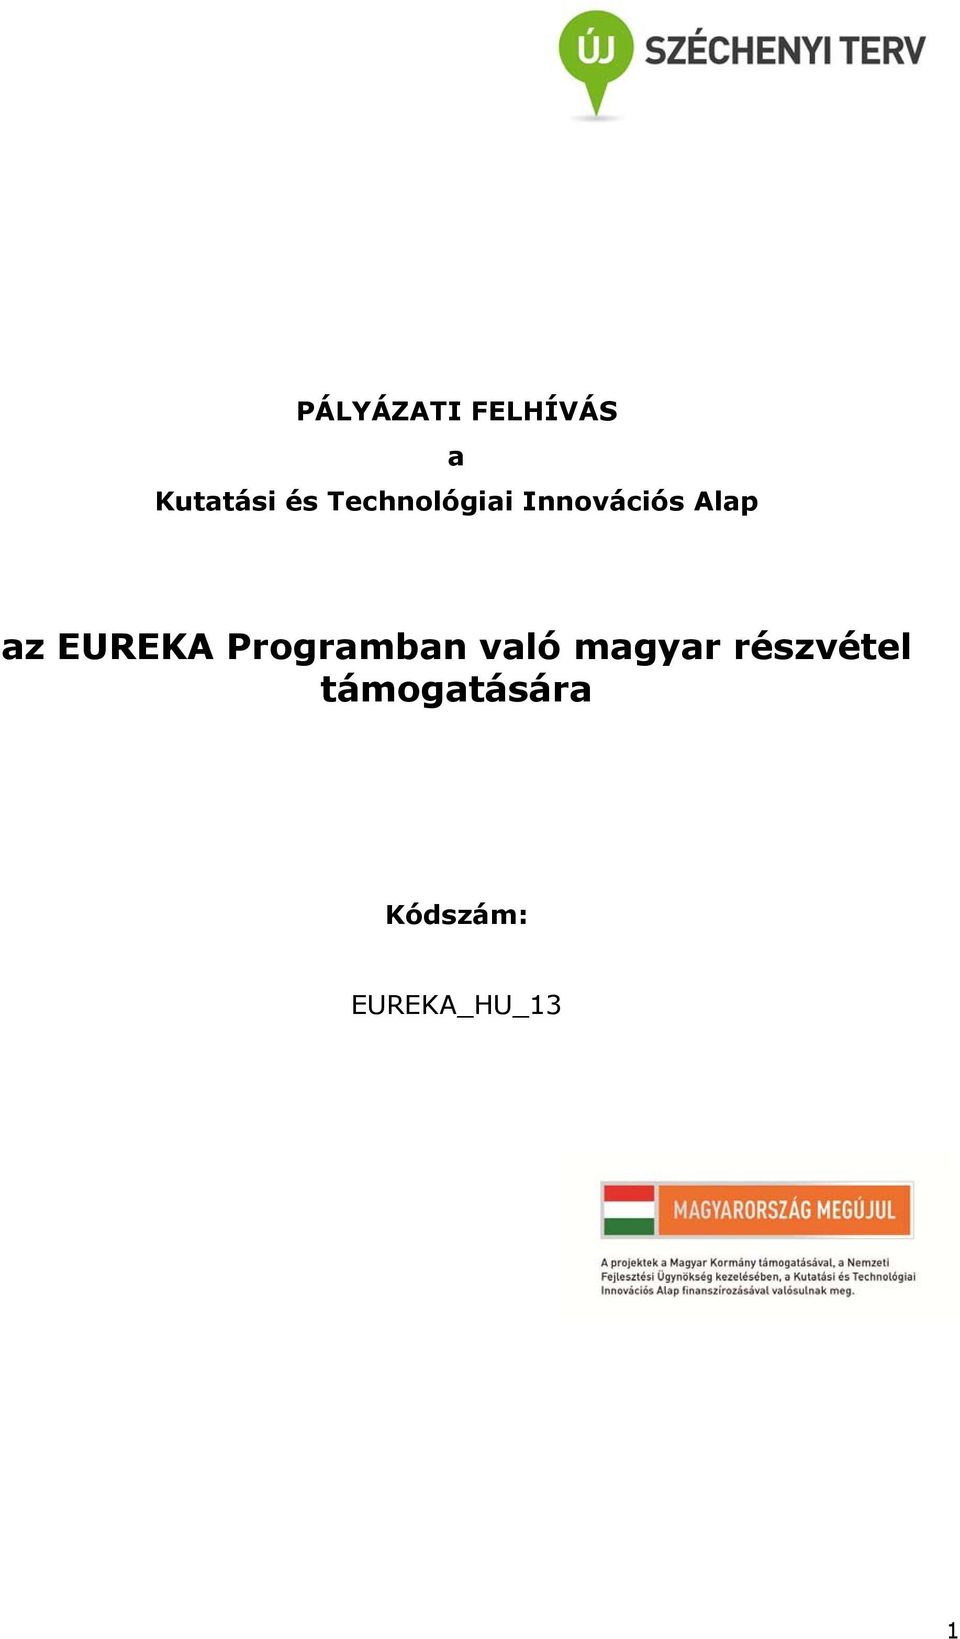 EUREKA Programban való magyar